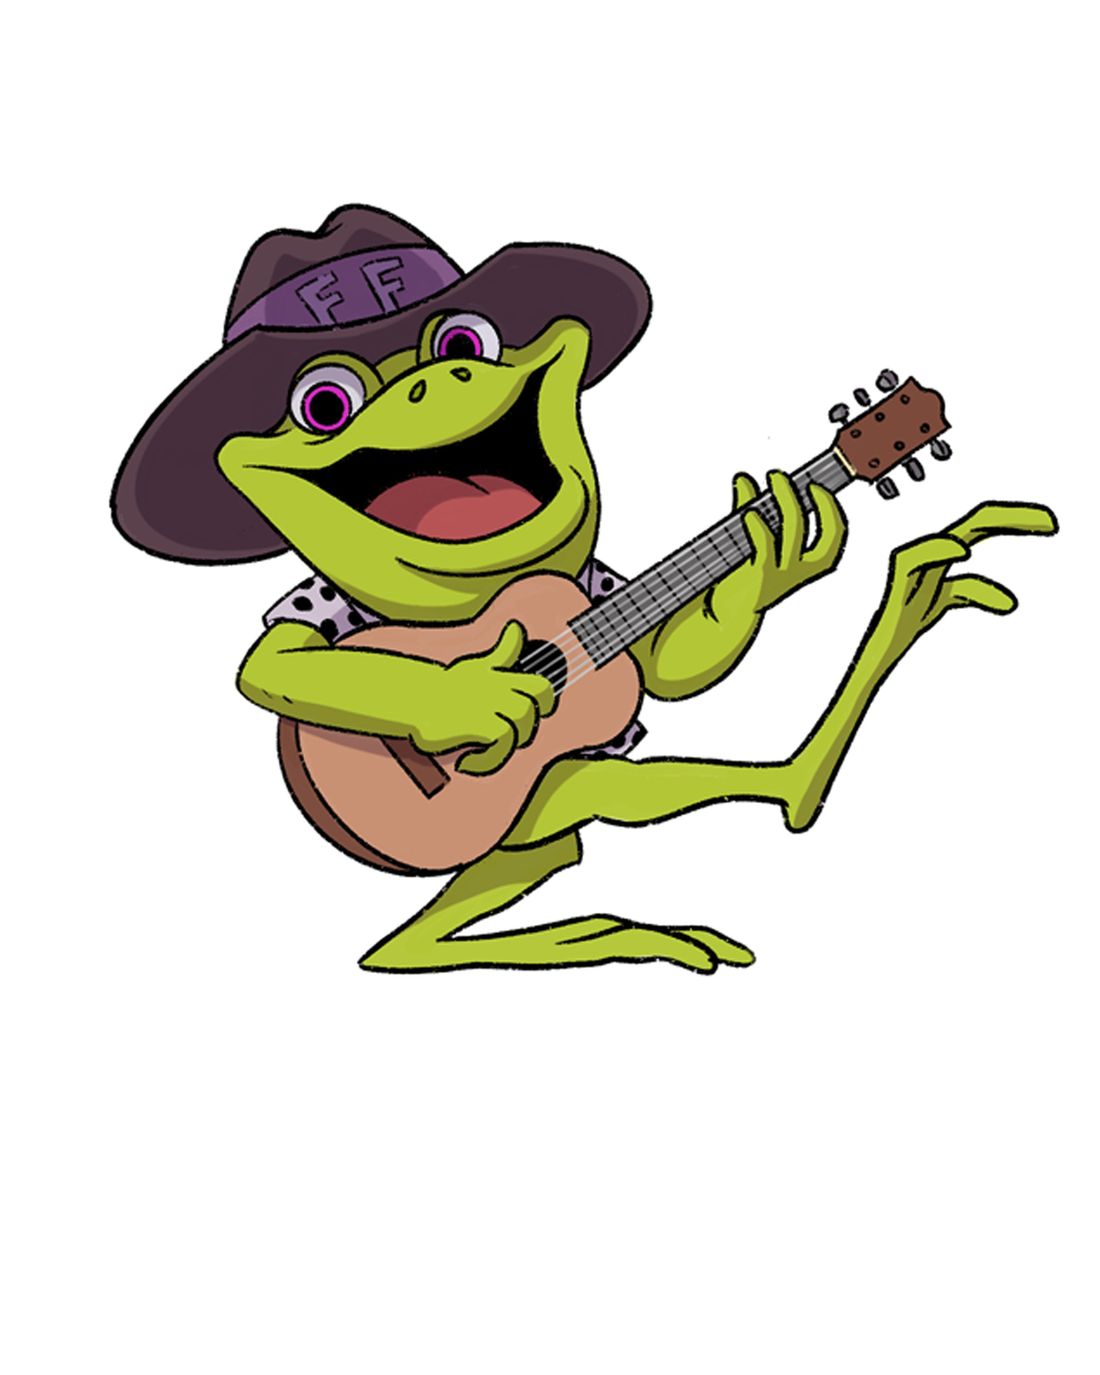 Freddie the Frog
